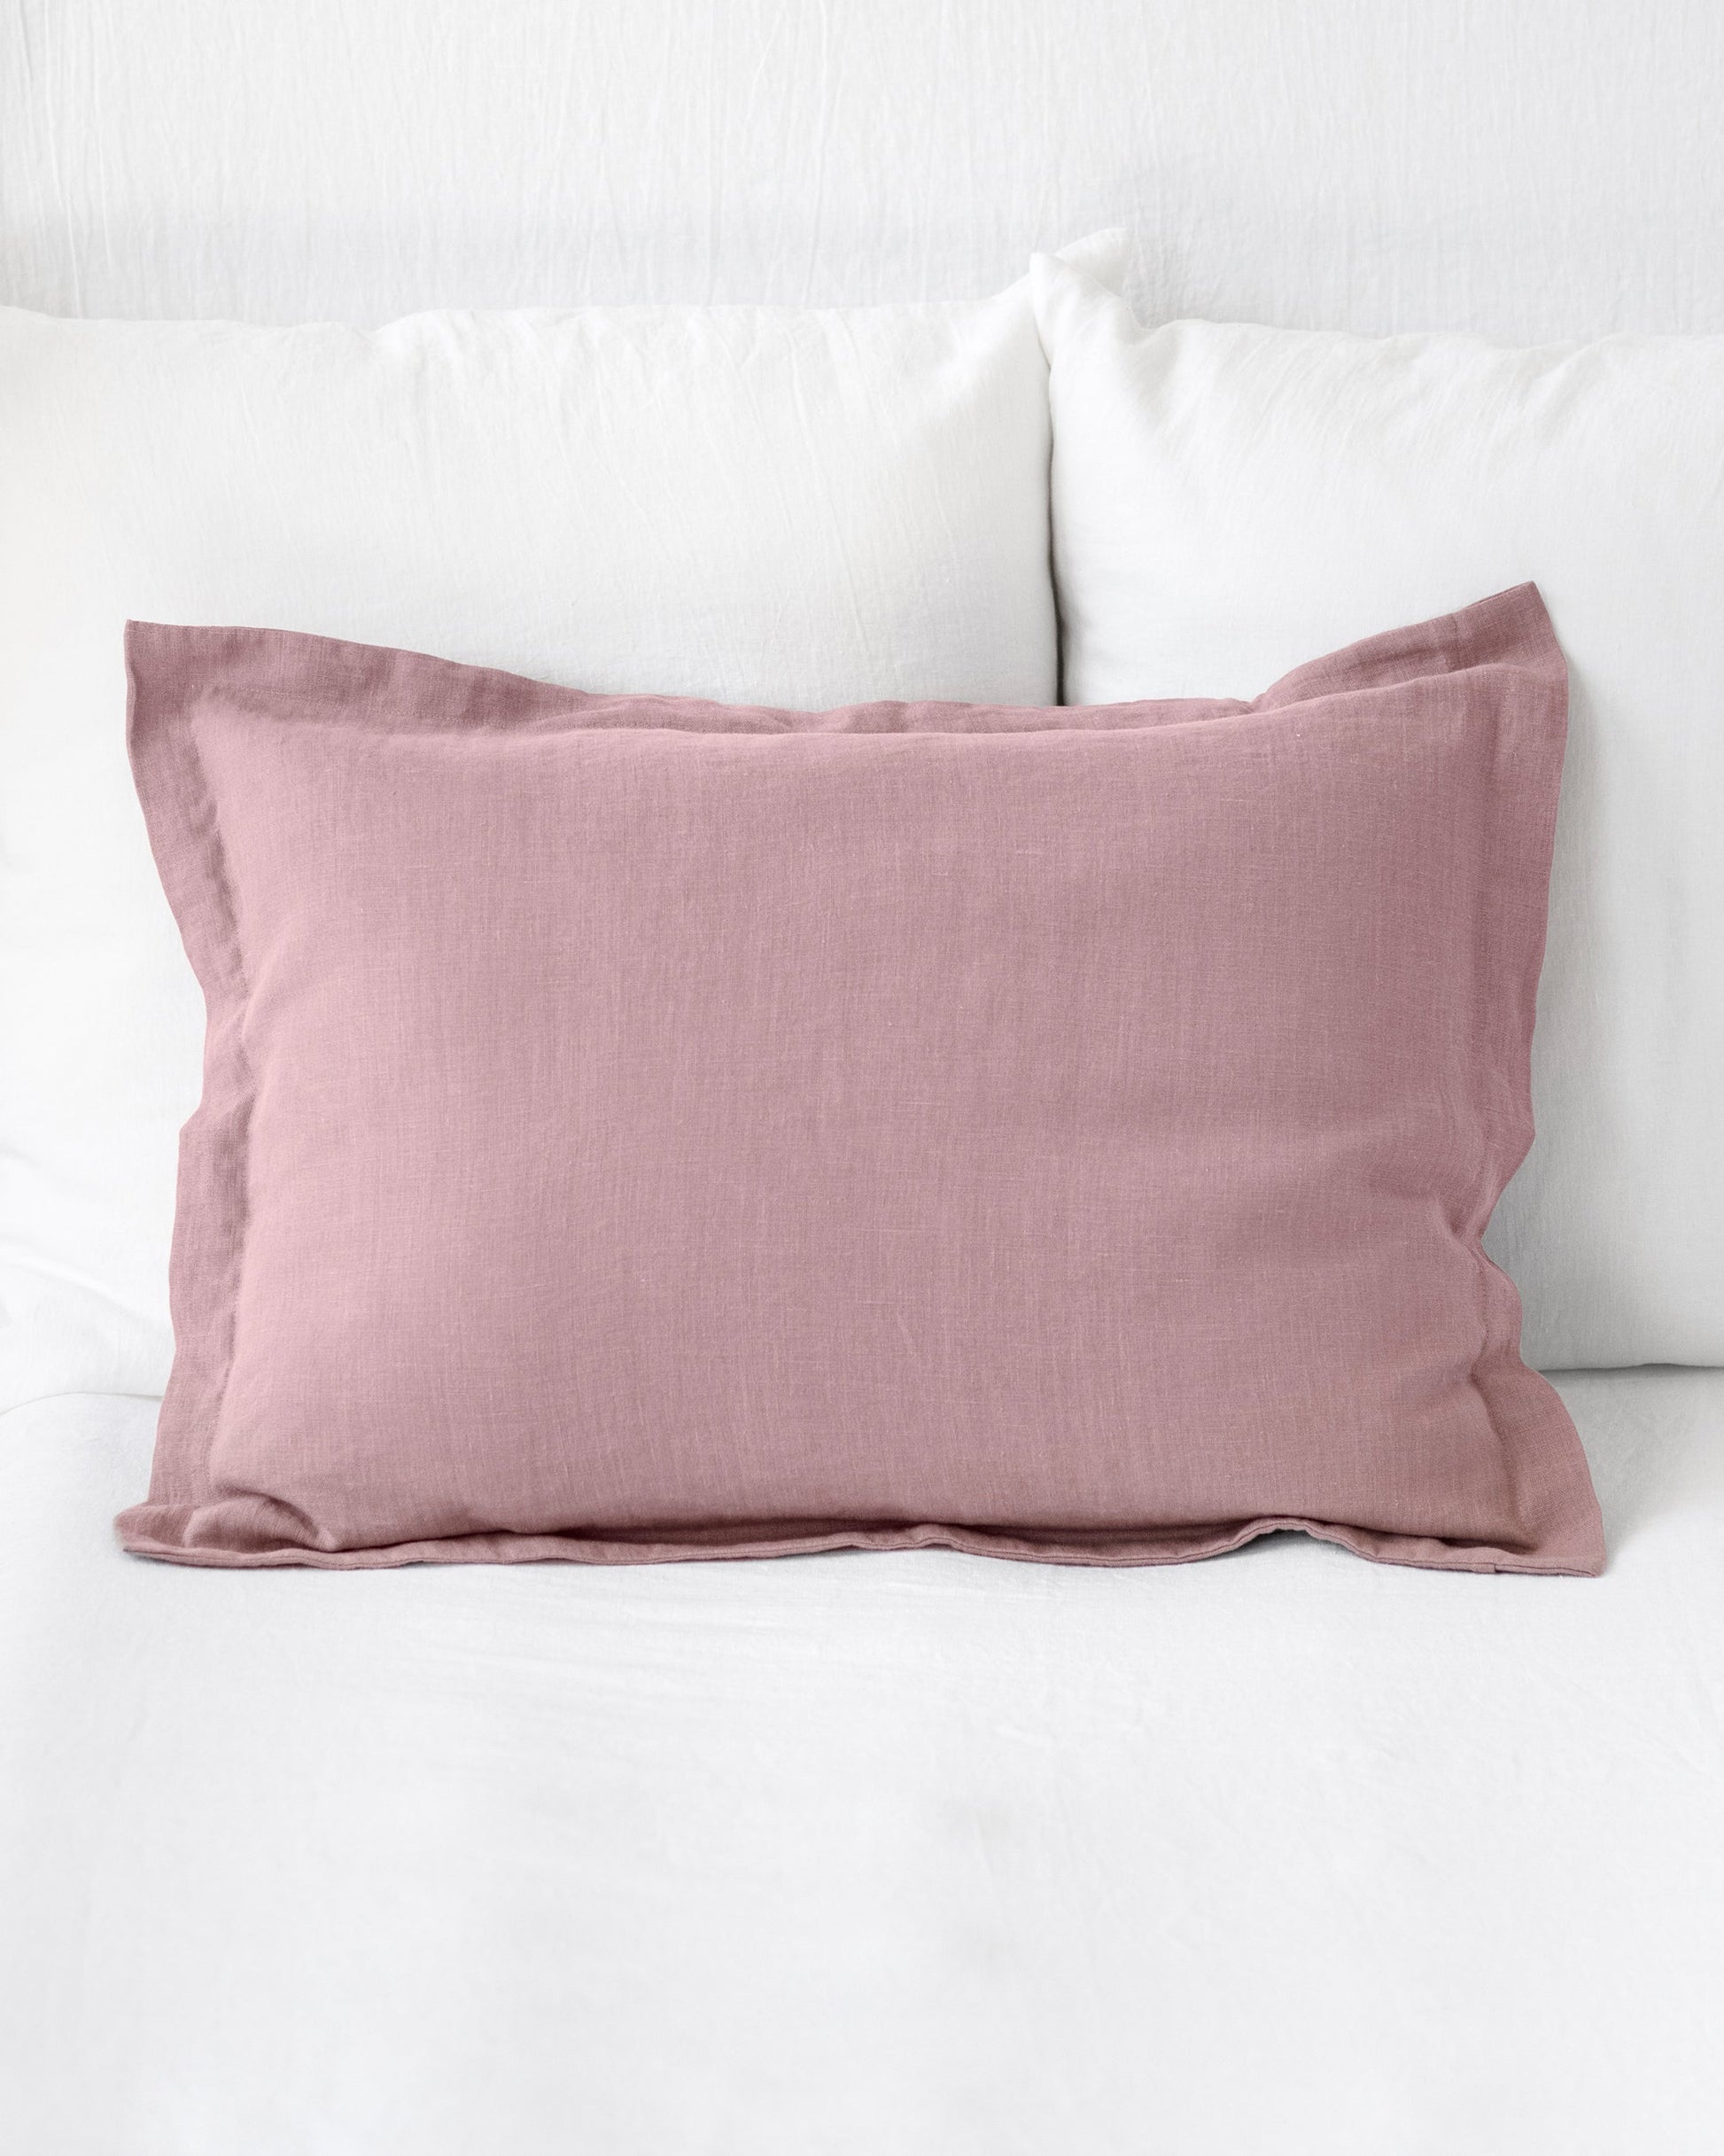 Linen pillow sham in Woodrose - MagicLinen